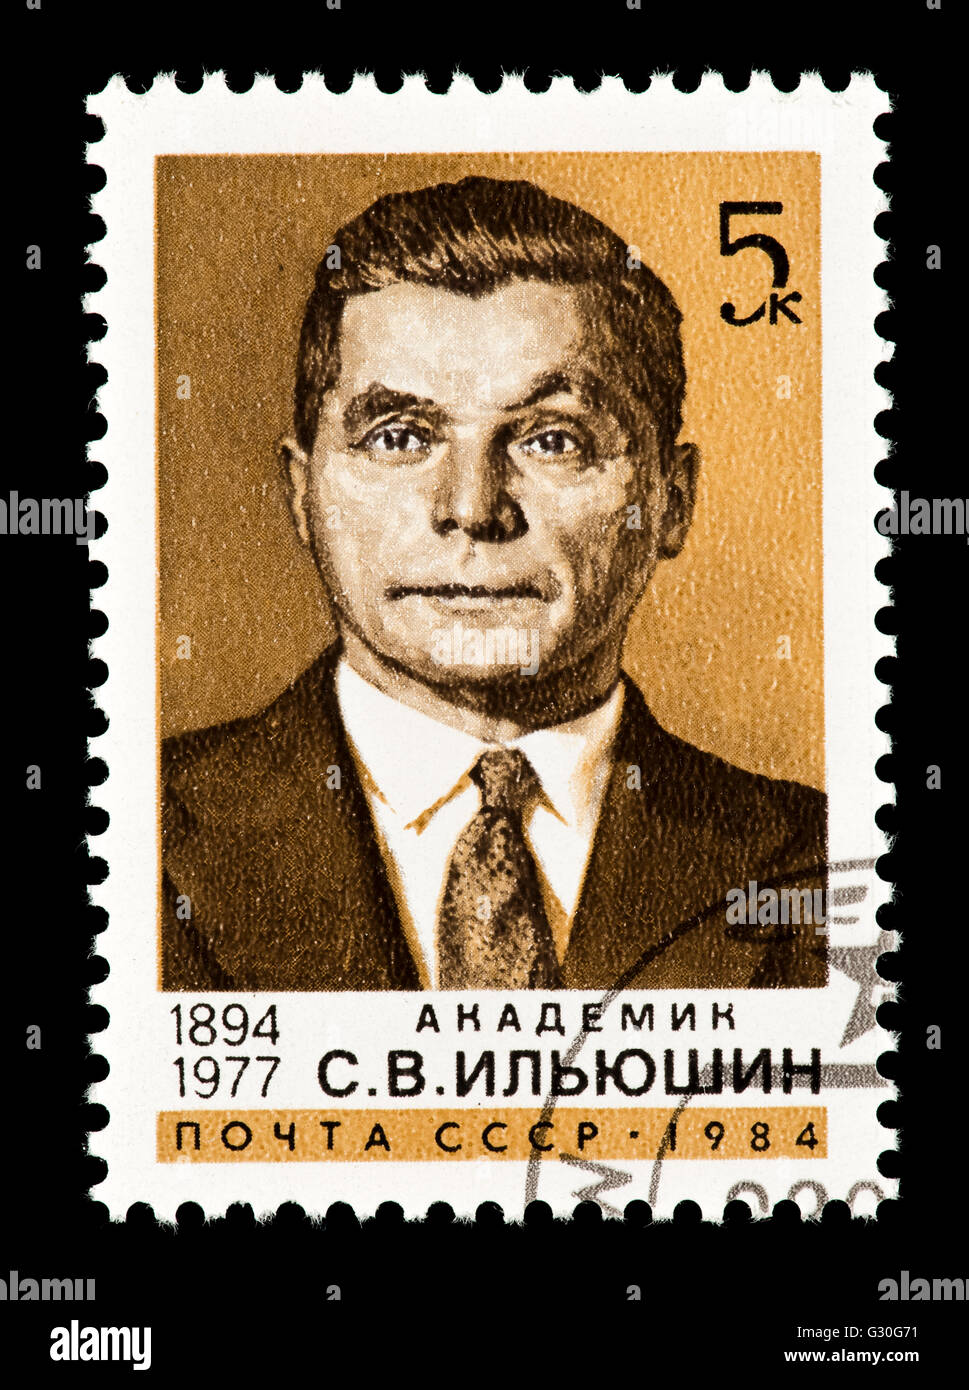 Timbre-poste de l'Union soviétique représentant S. C. Iliouchine, concepteur d'avions. Banque D'Images